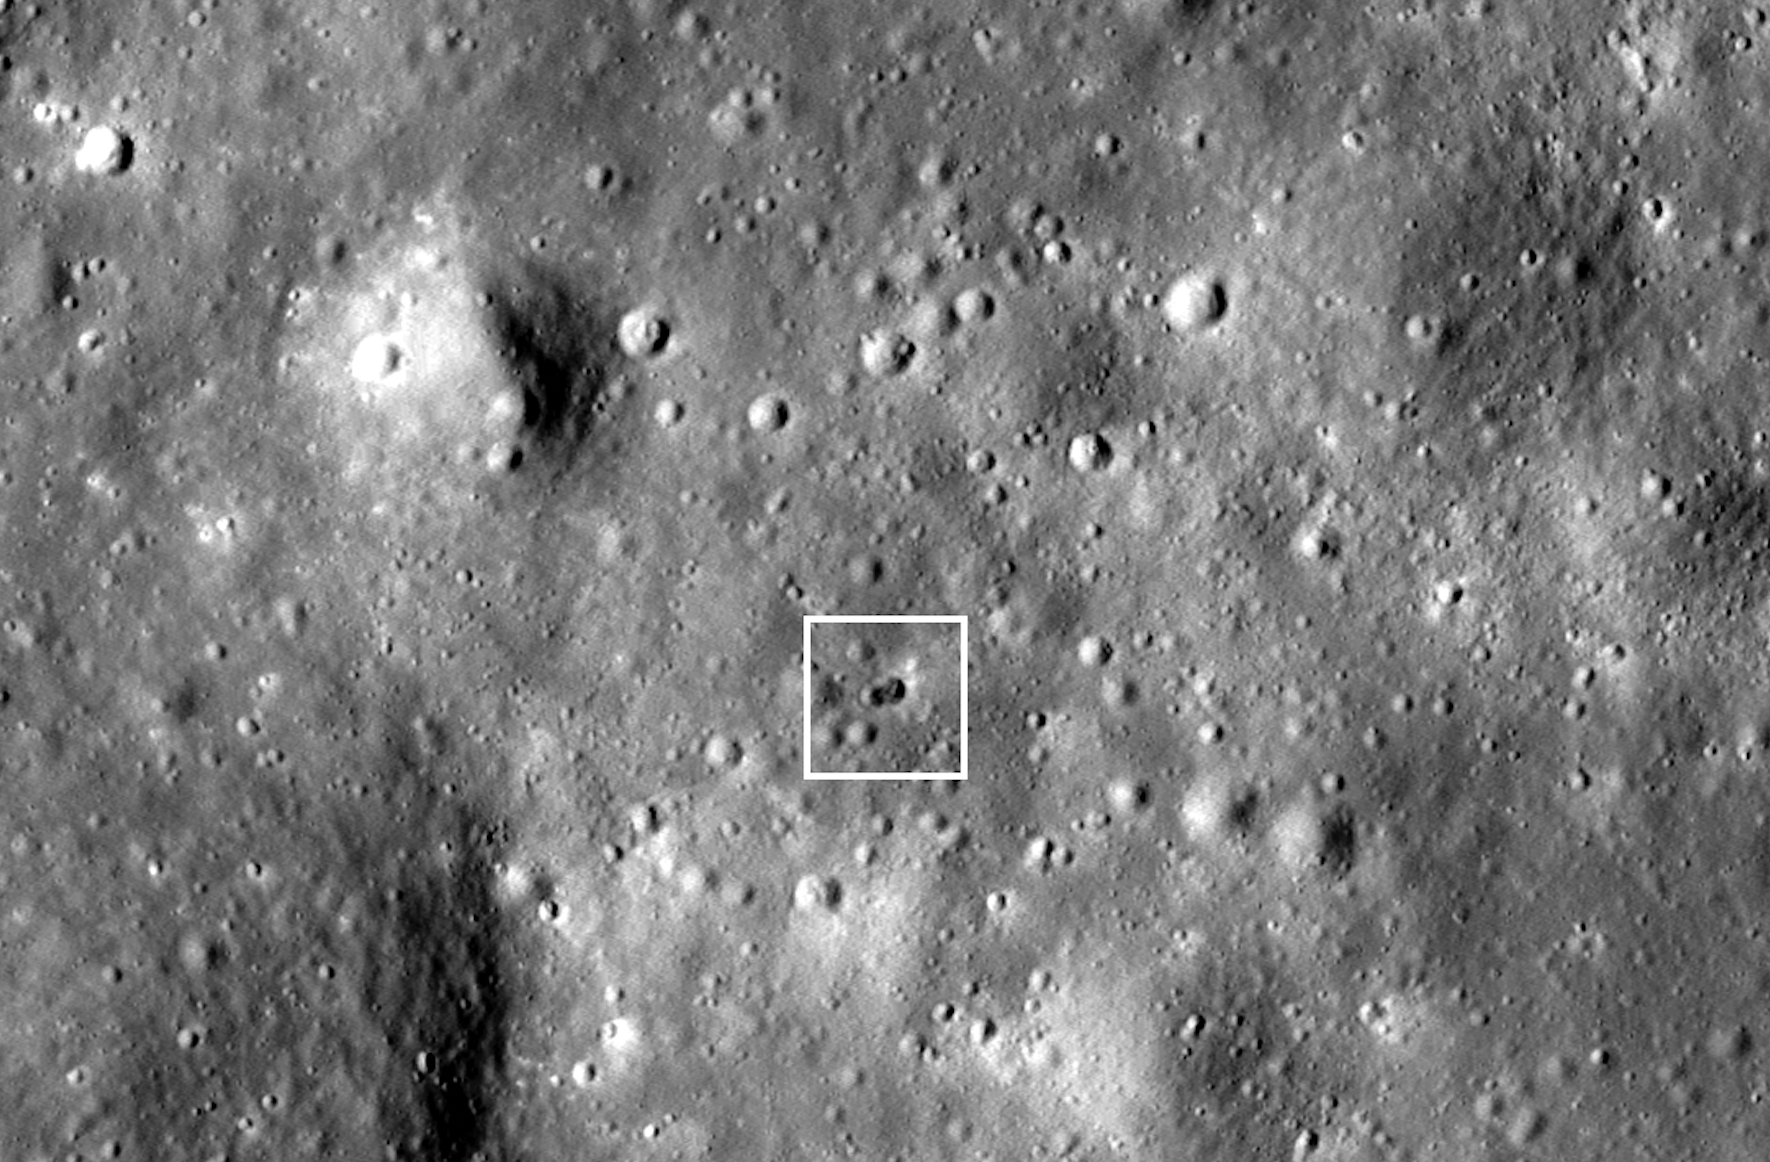 Imagen de alta resolución del reciente impacto de un cohete que ocasionó dos cráteres